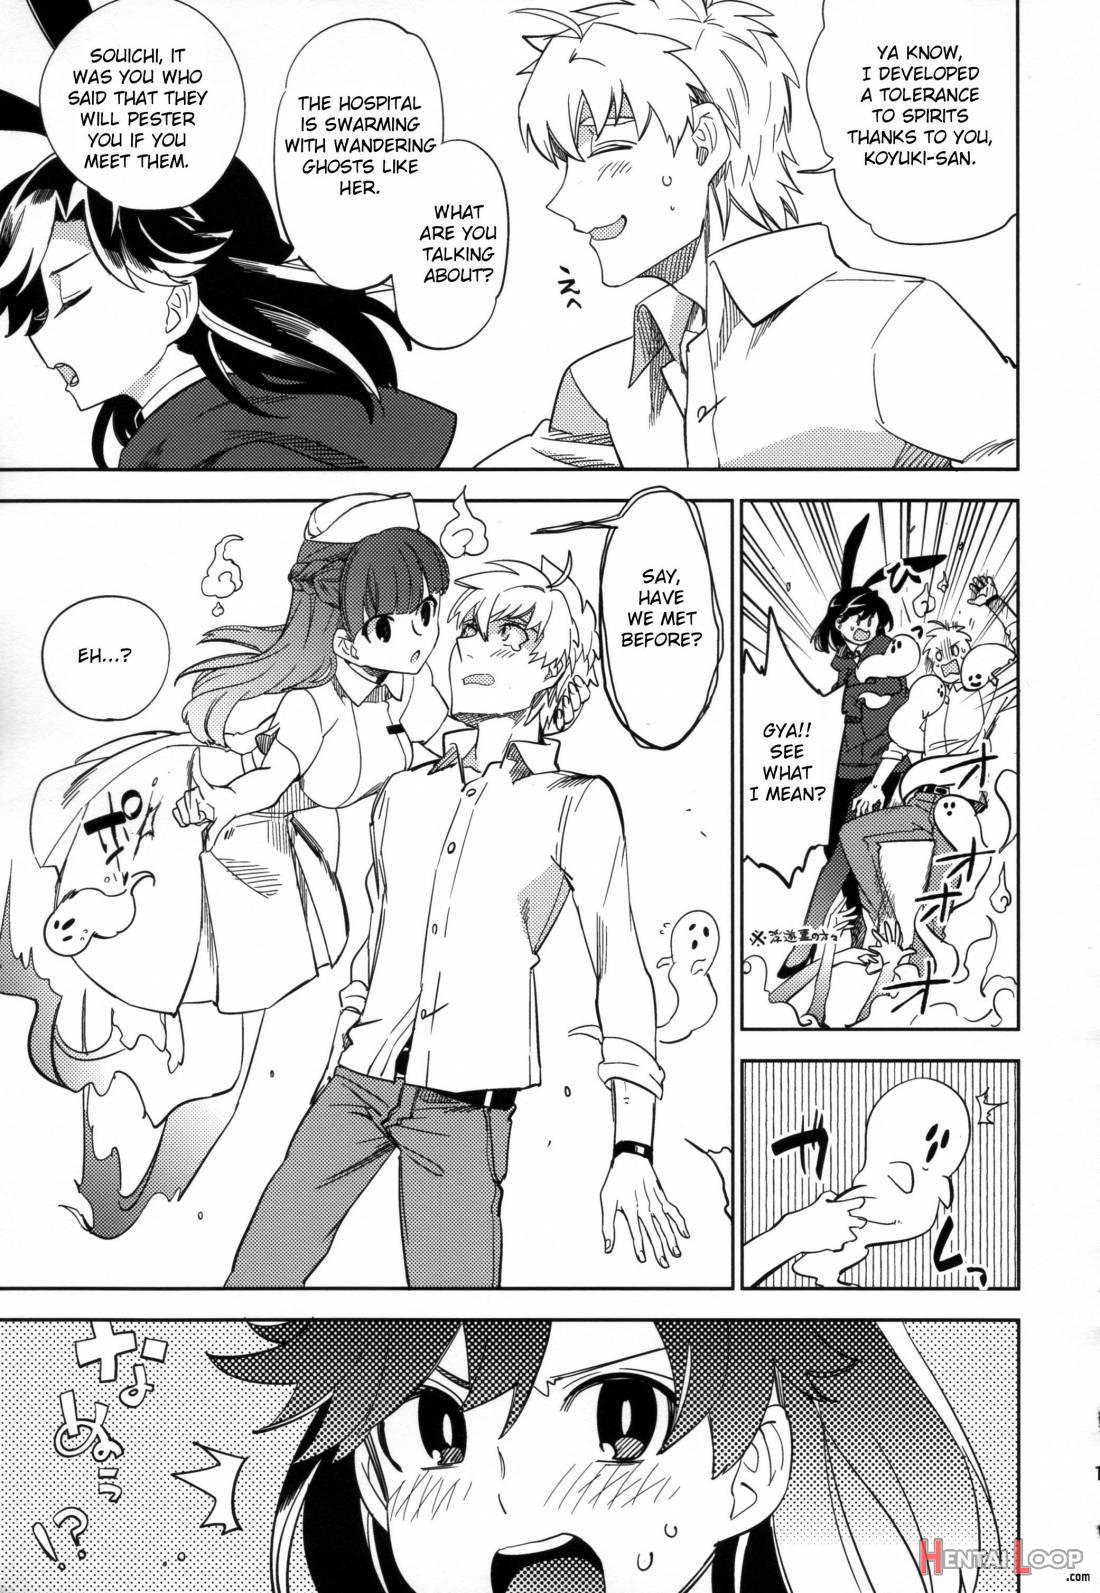 Yojo-han Bunny Part 2 page 12